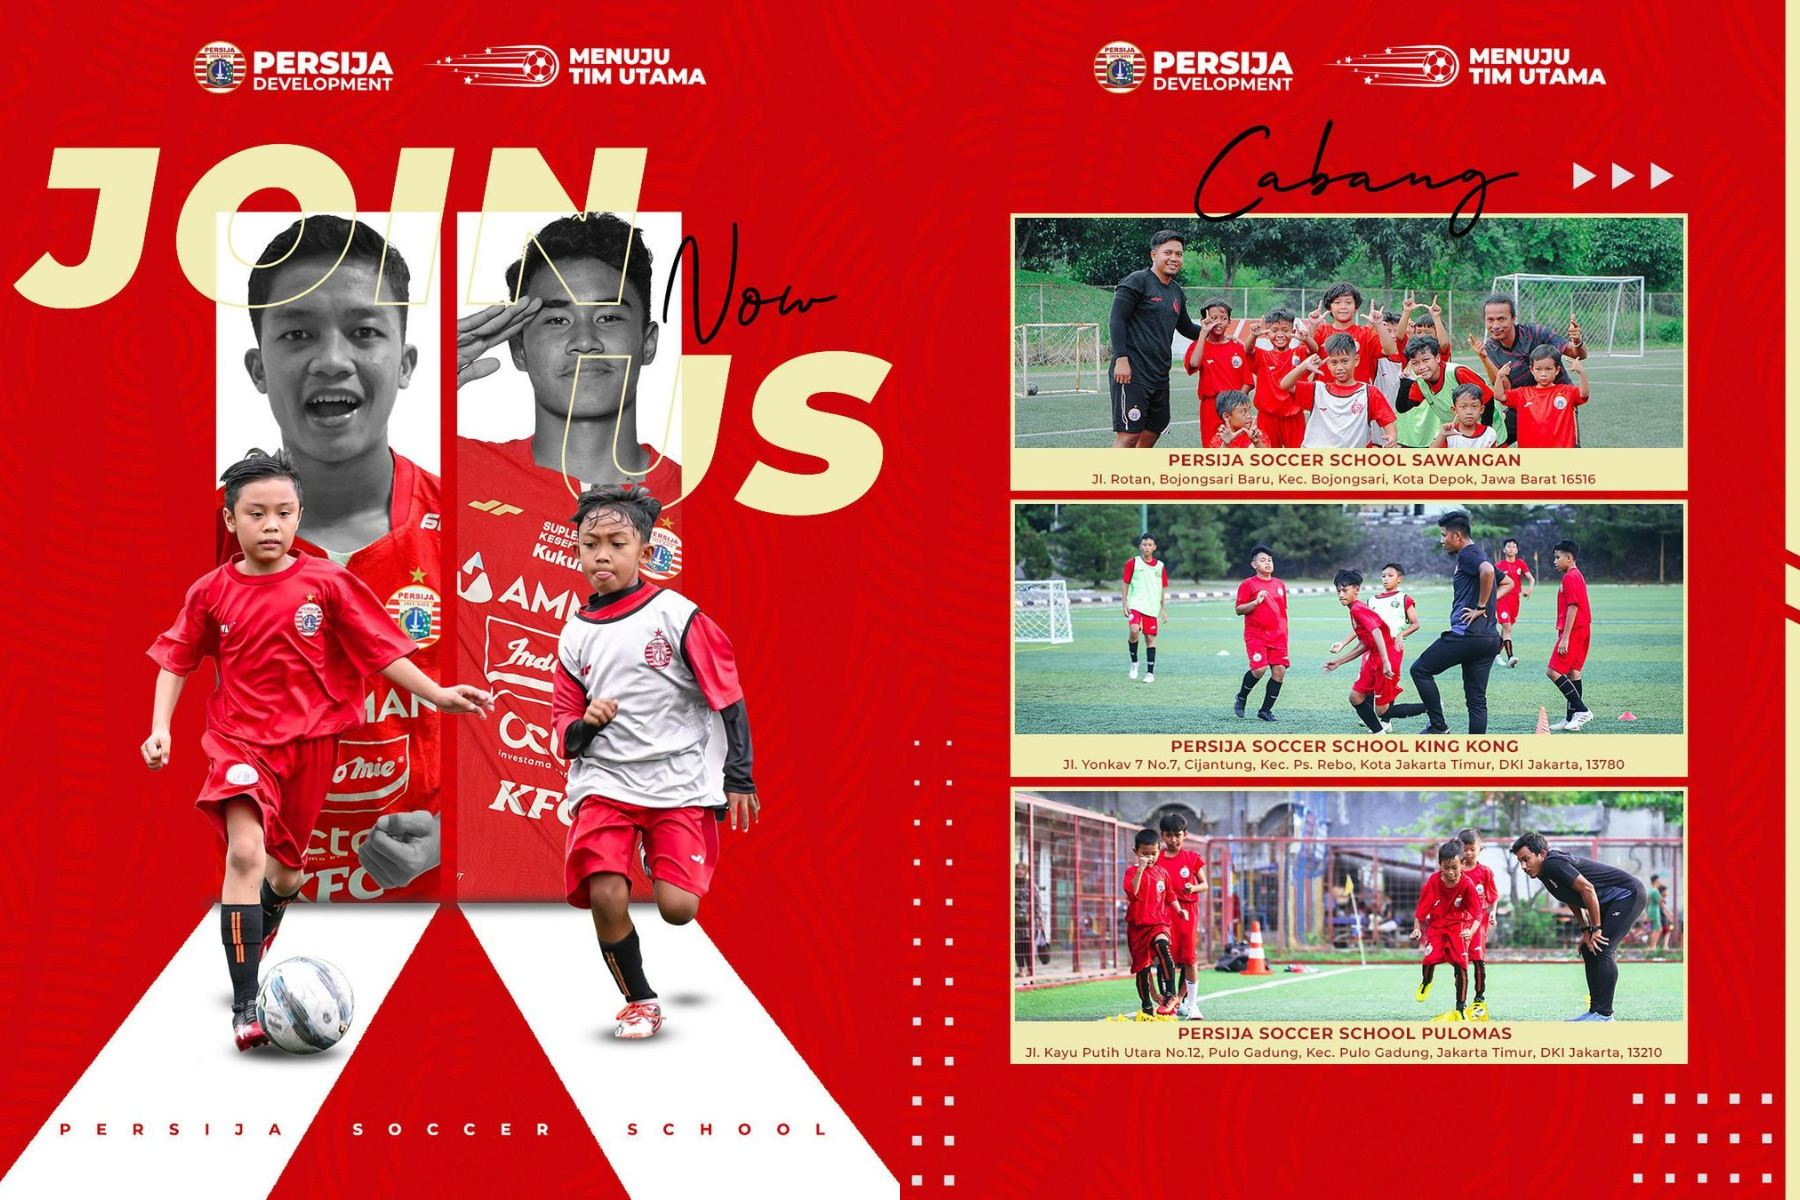 Persija Soccer School Telah Dibuka di 3 Cabang Tempat yang Berbeda